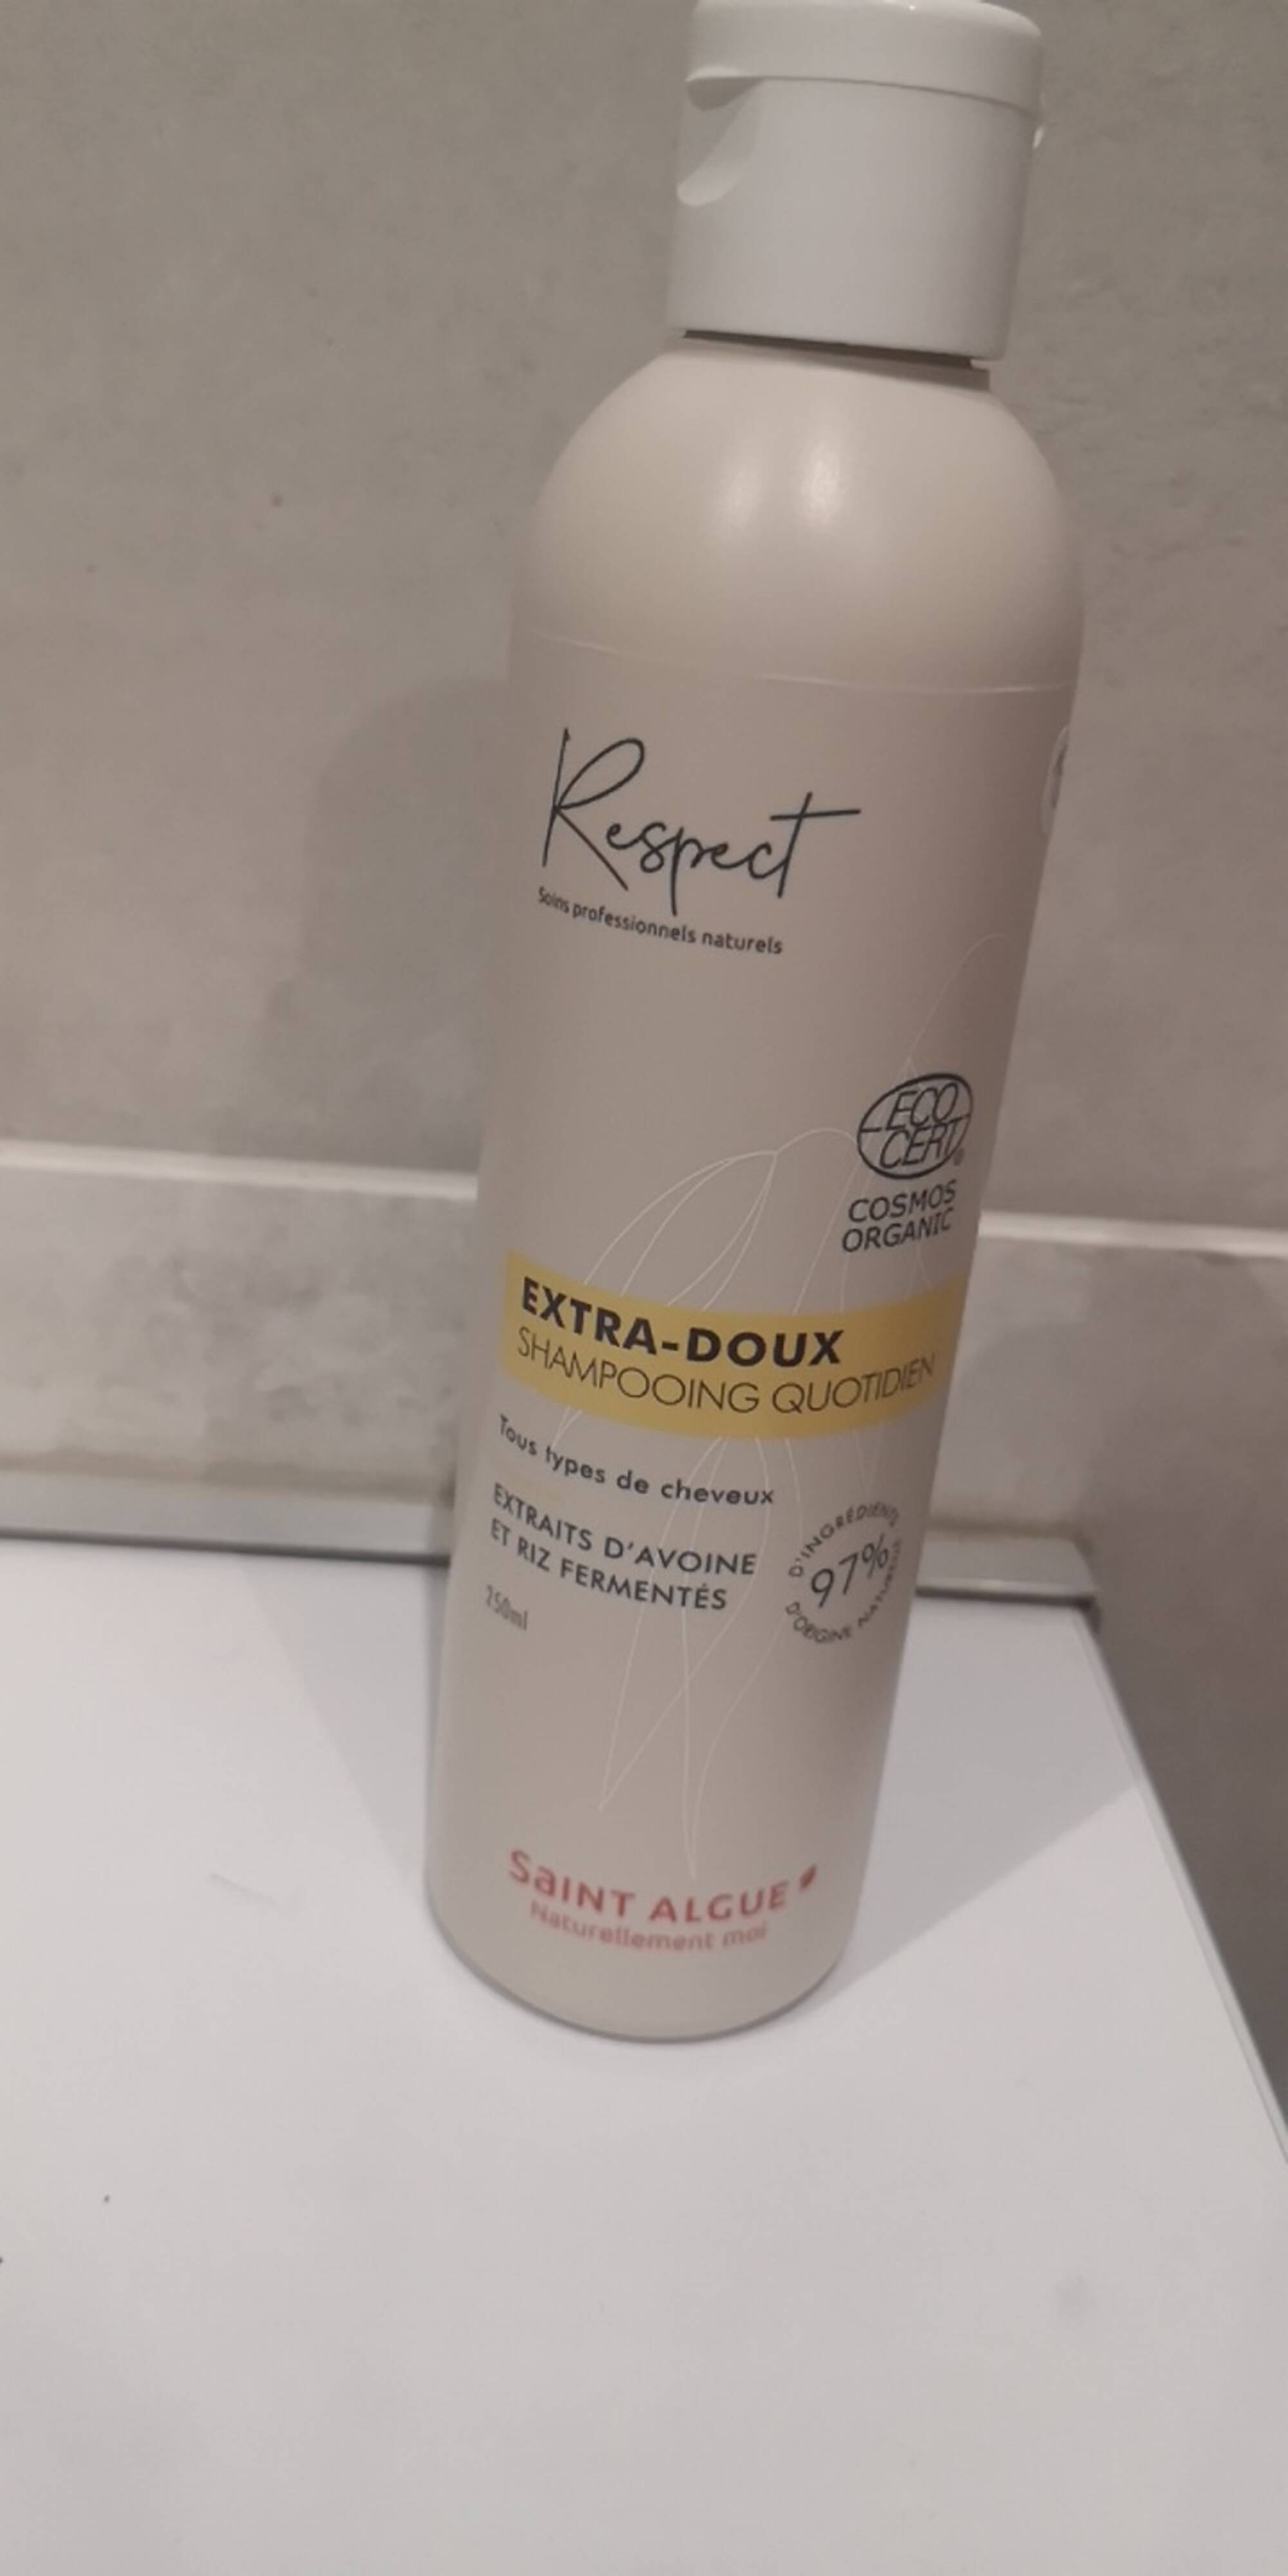 SAINT ALGUE - Respect extra-doux - Shampooing quotidien